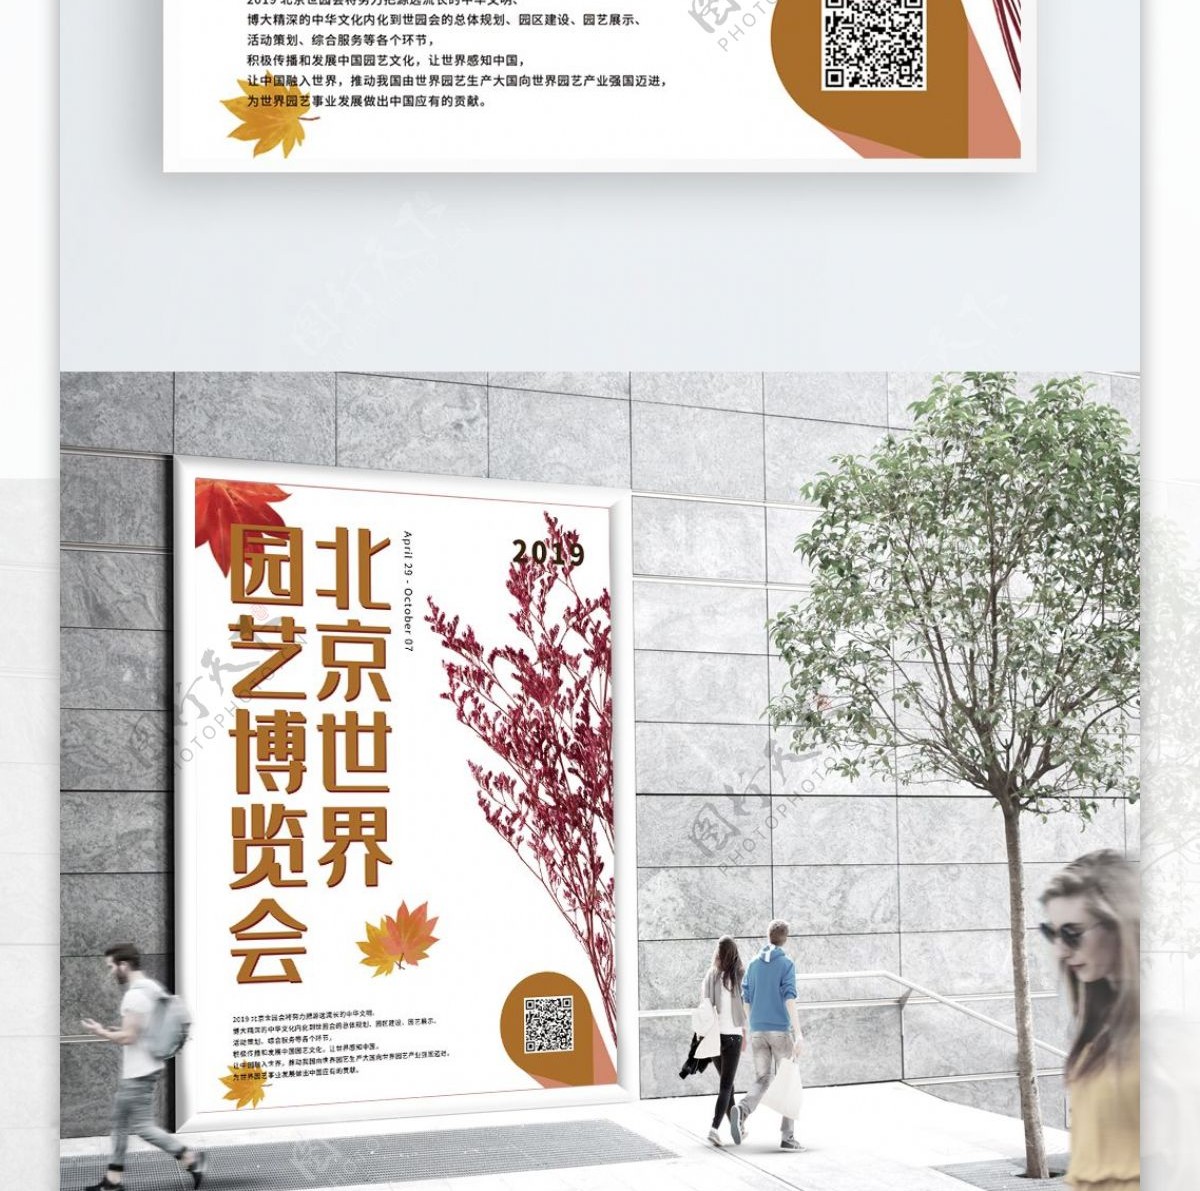 色彩植物北京世界园艺博览会